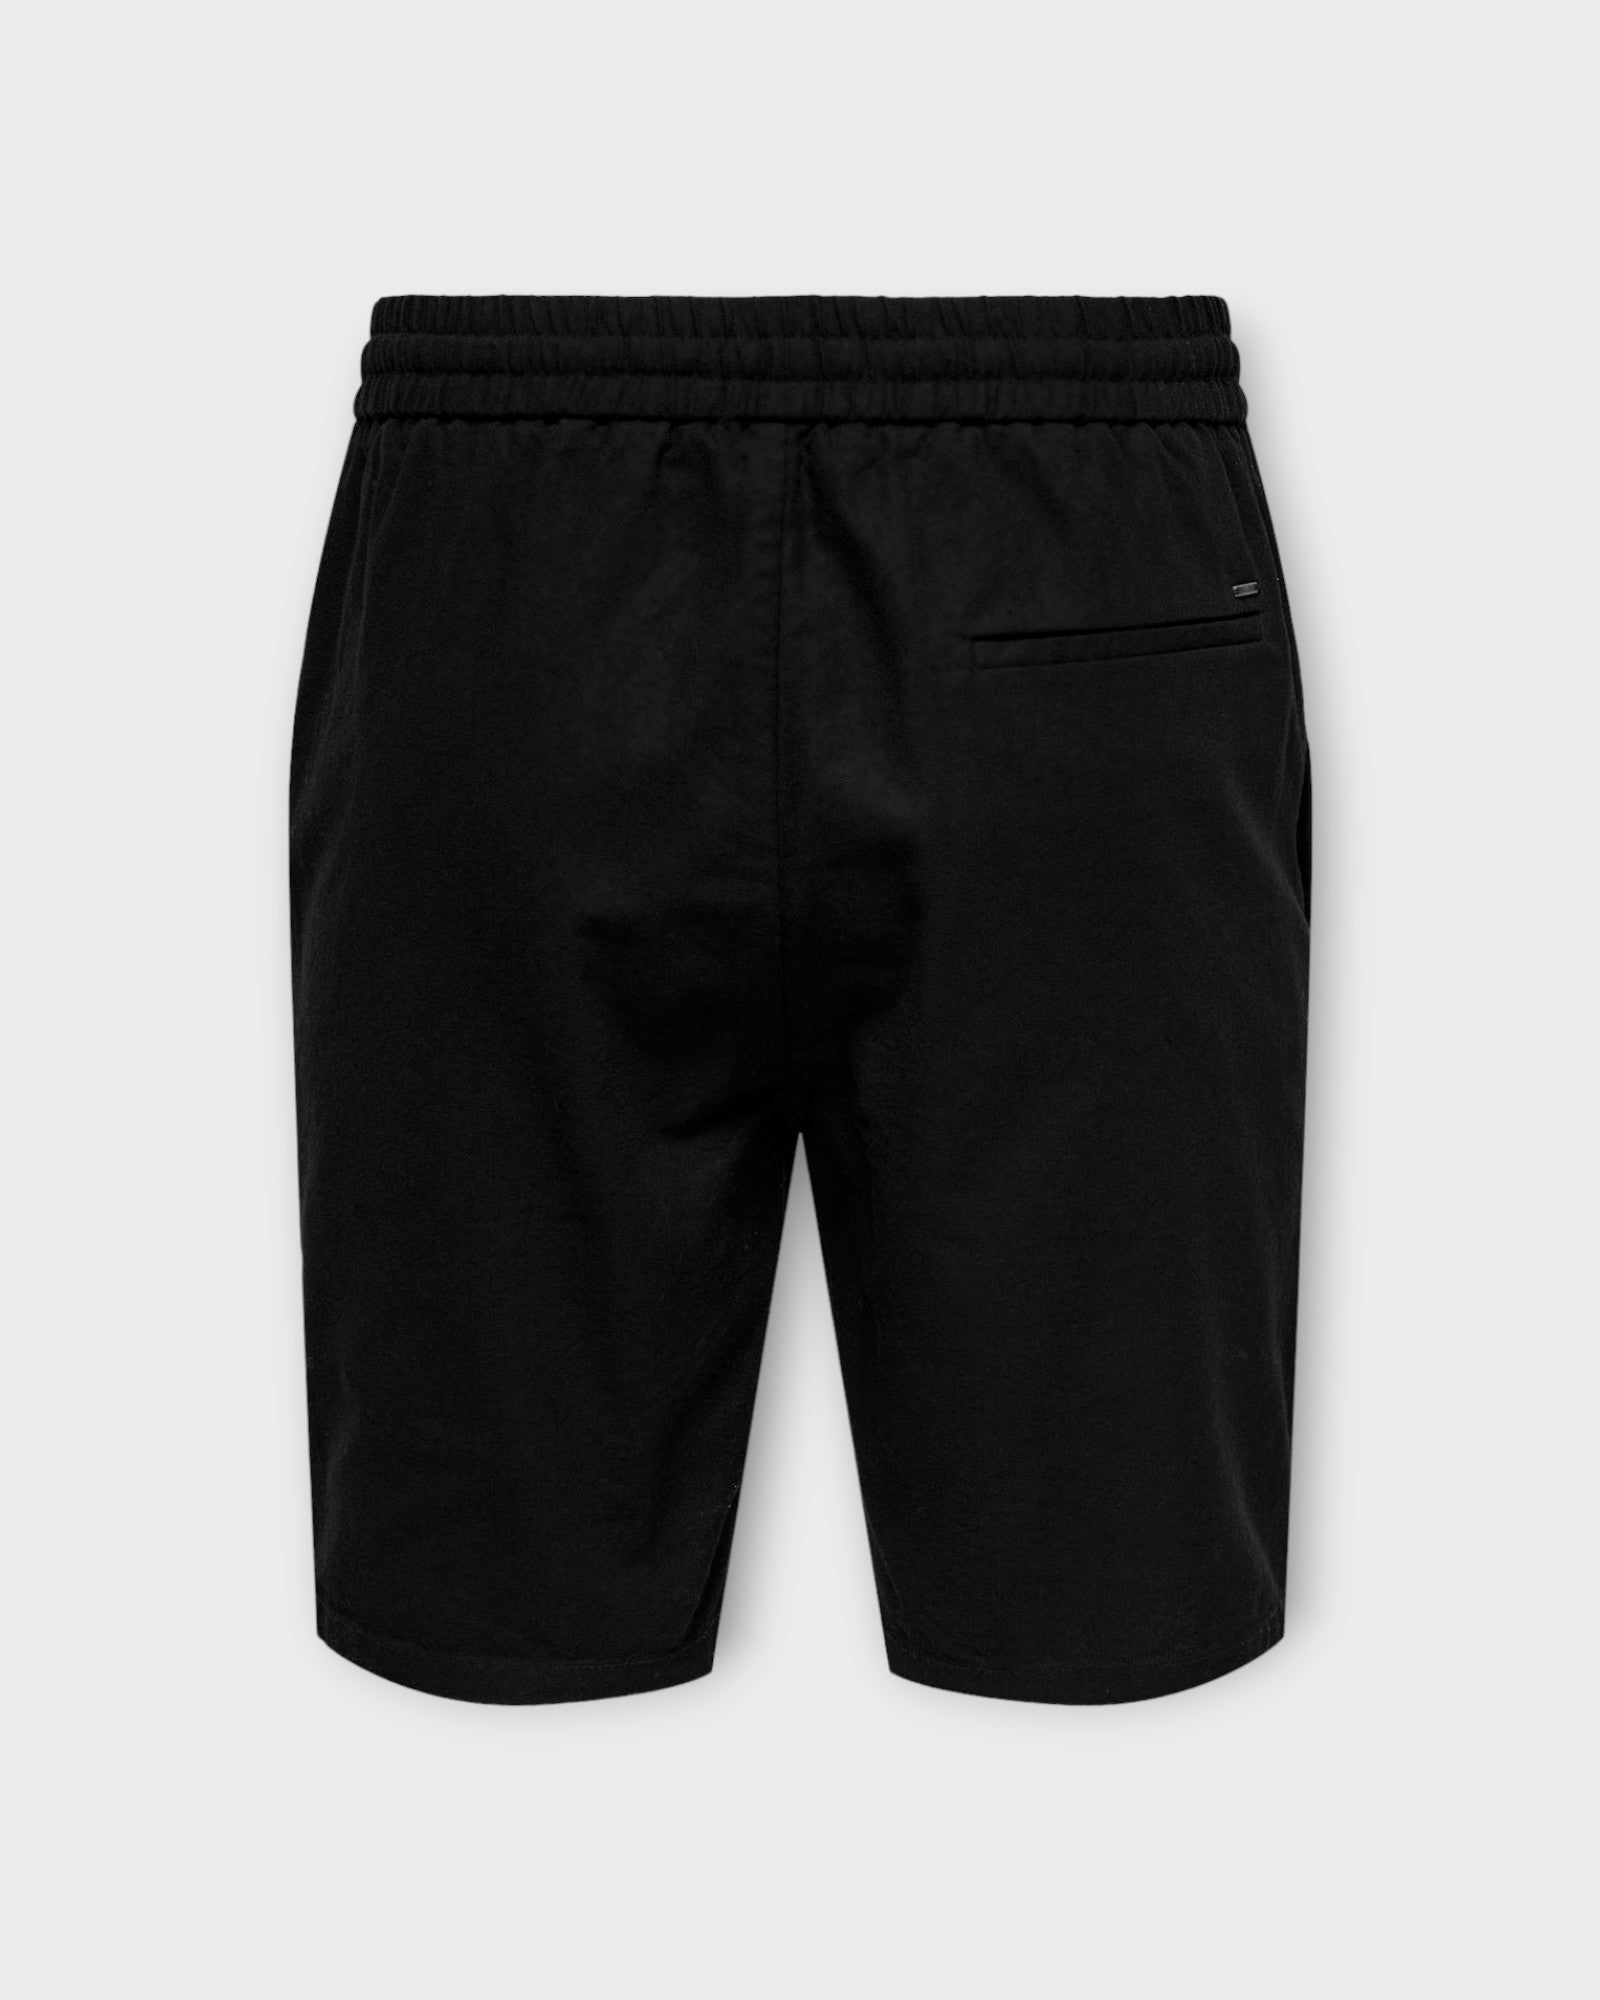 Linus 0007 Cot Lin Shorts Noos Black fra Only and Sons. Sorte hør shorts til mænd med elastik i livet. Her set bagfra.